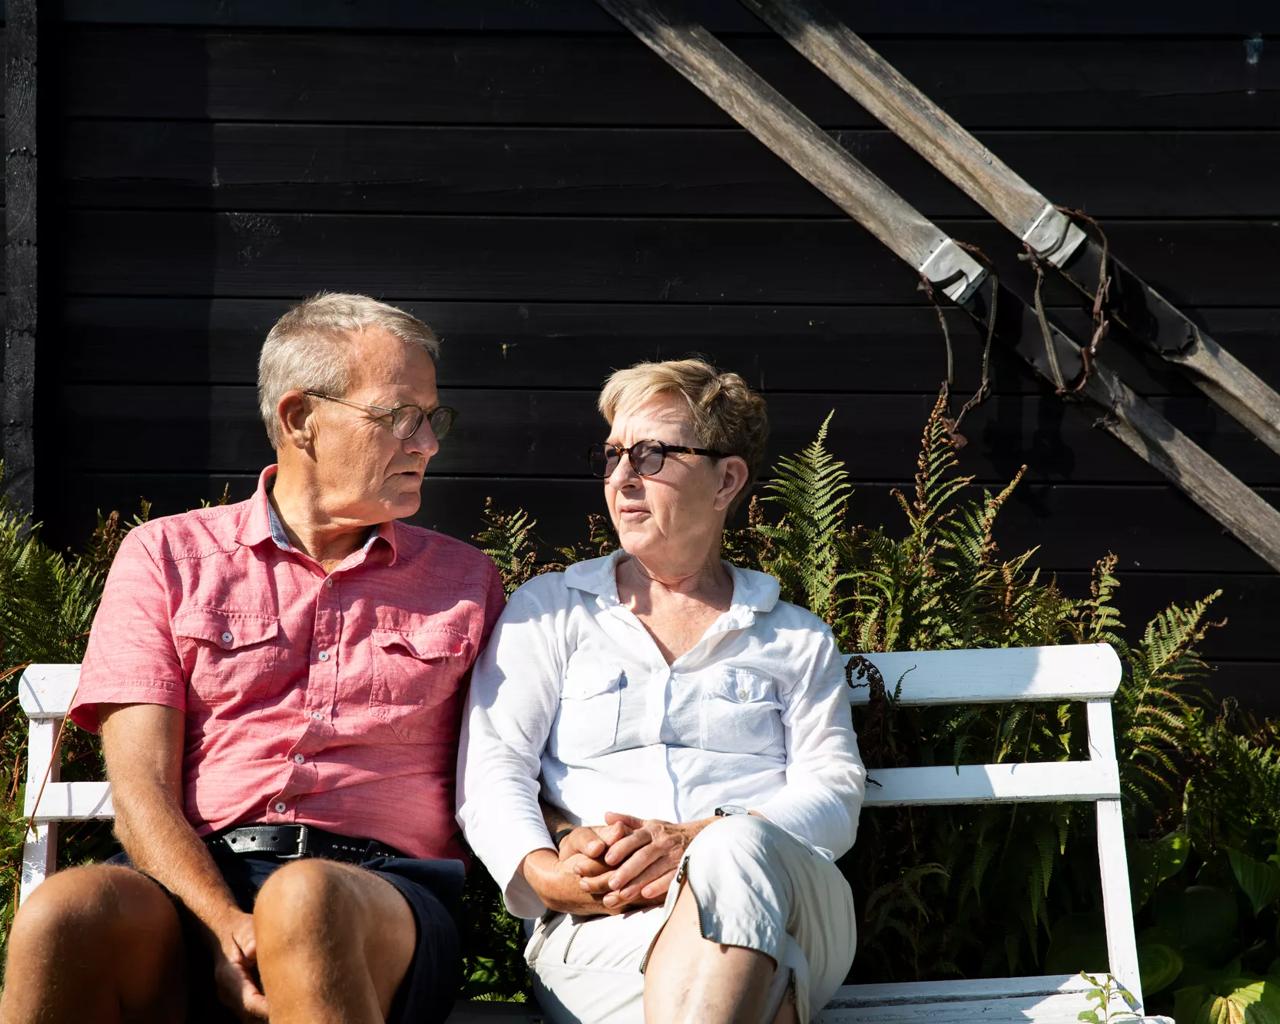 Ægtepar sidder på en bænk i solen og taler sammen